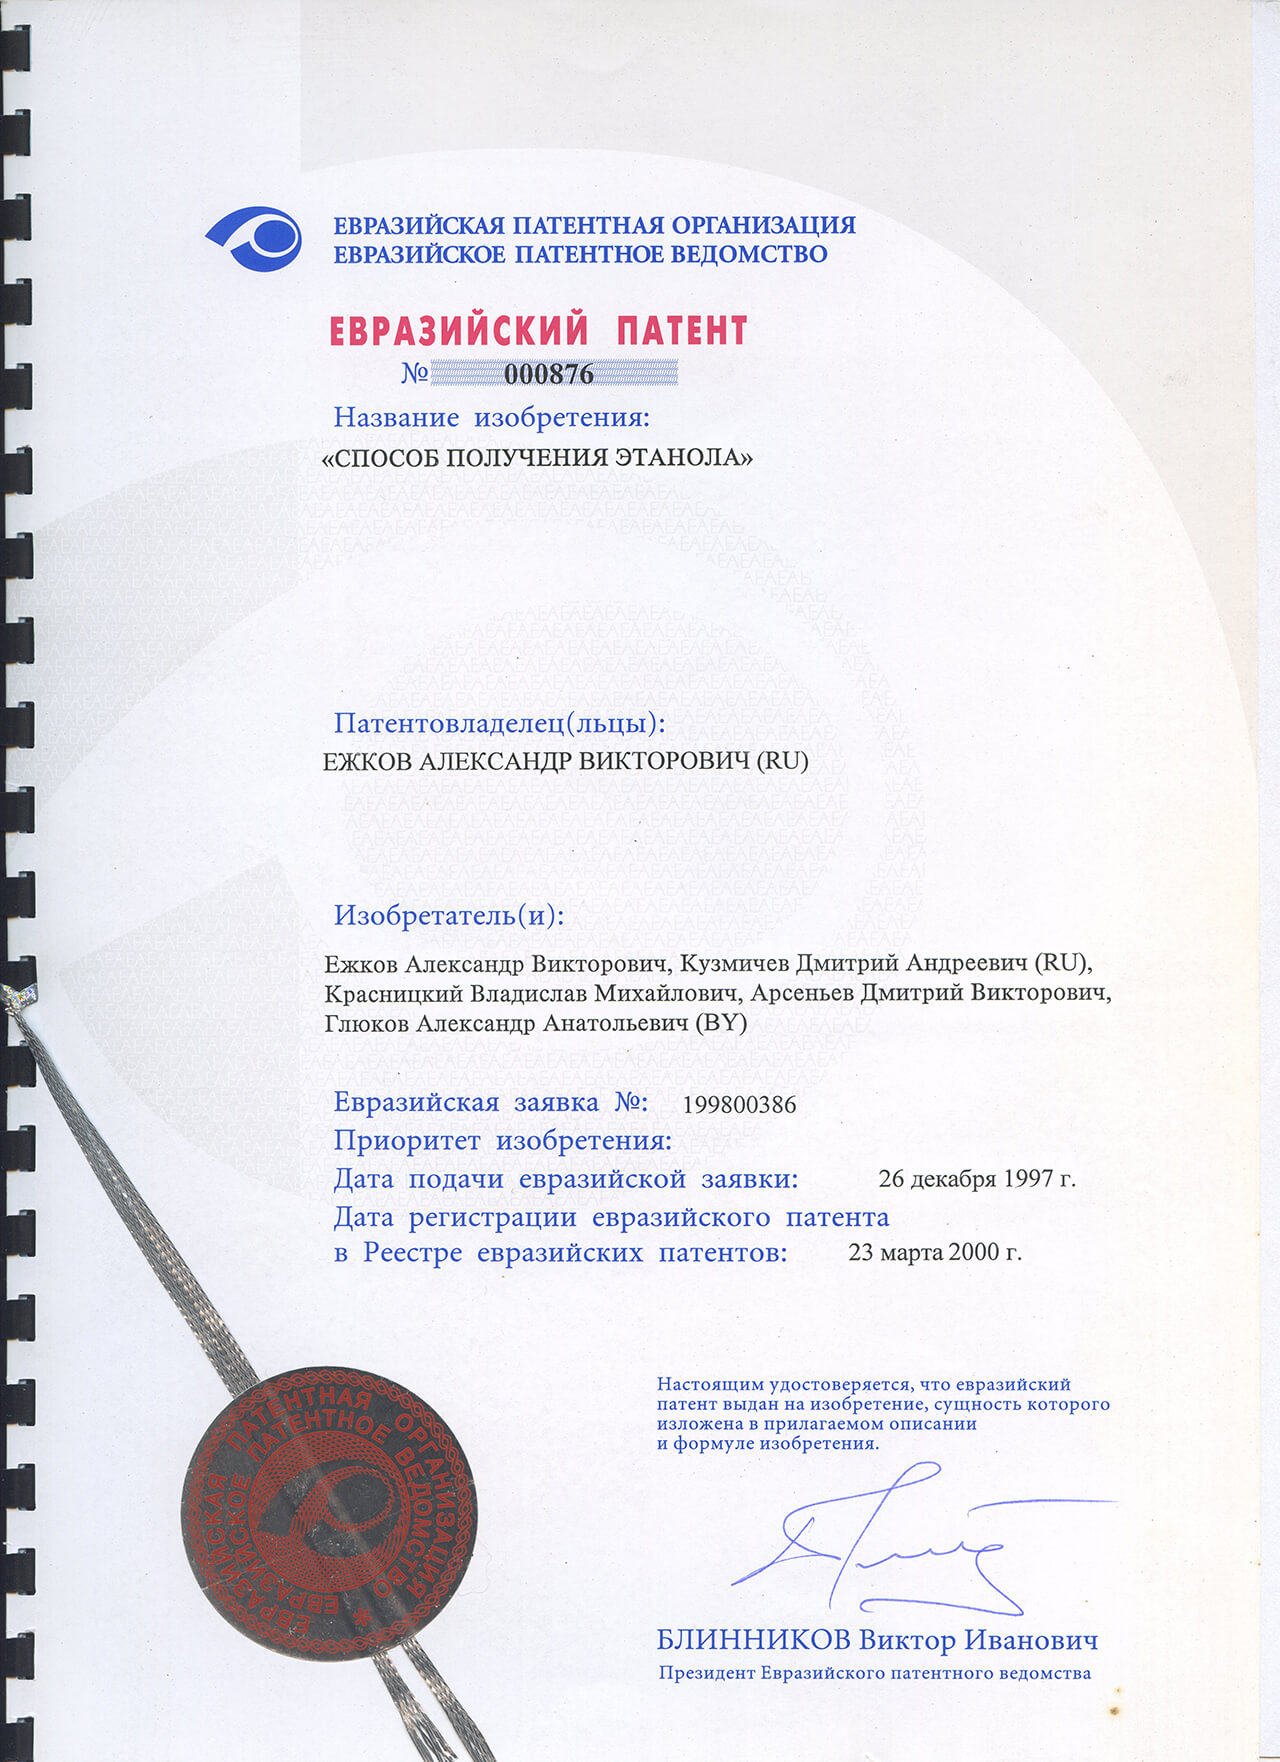 Евразийский патент № 000876